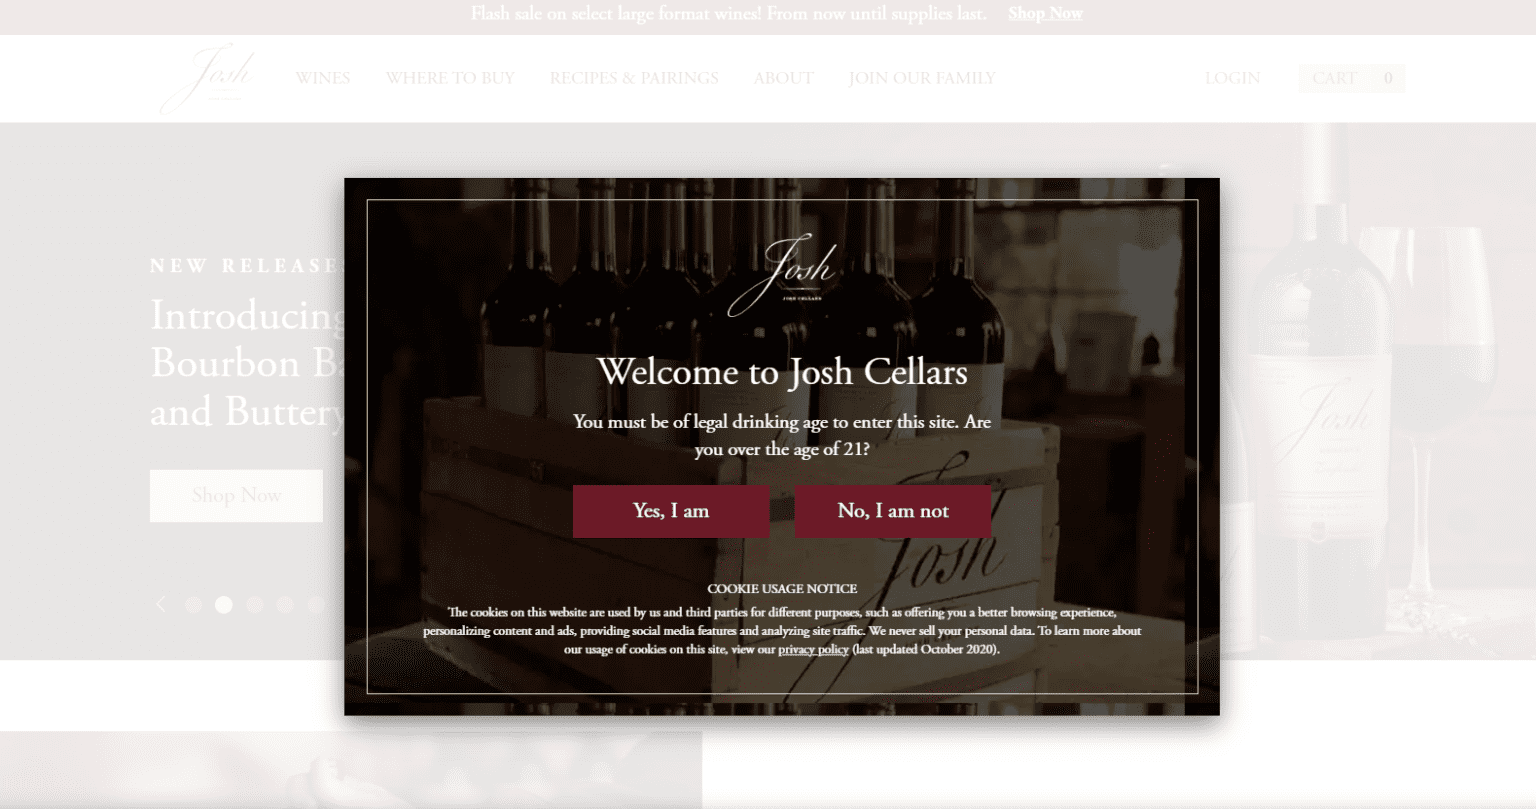 Josh Cellars Wine Rebate Form By Mail Printable Rebate Form